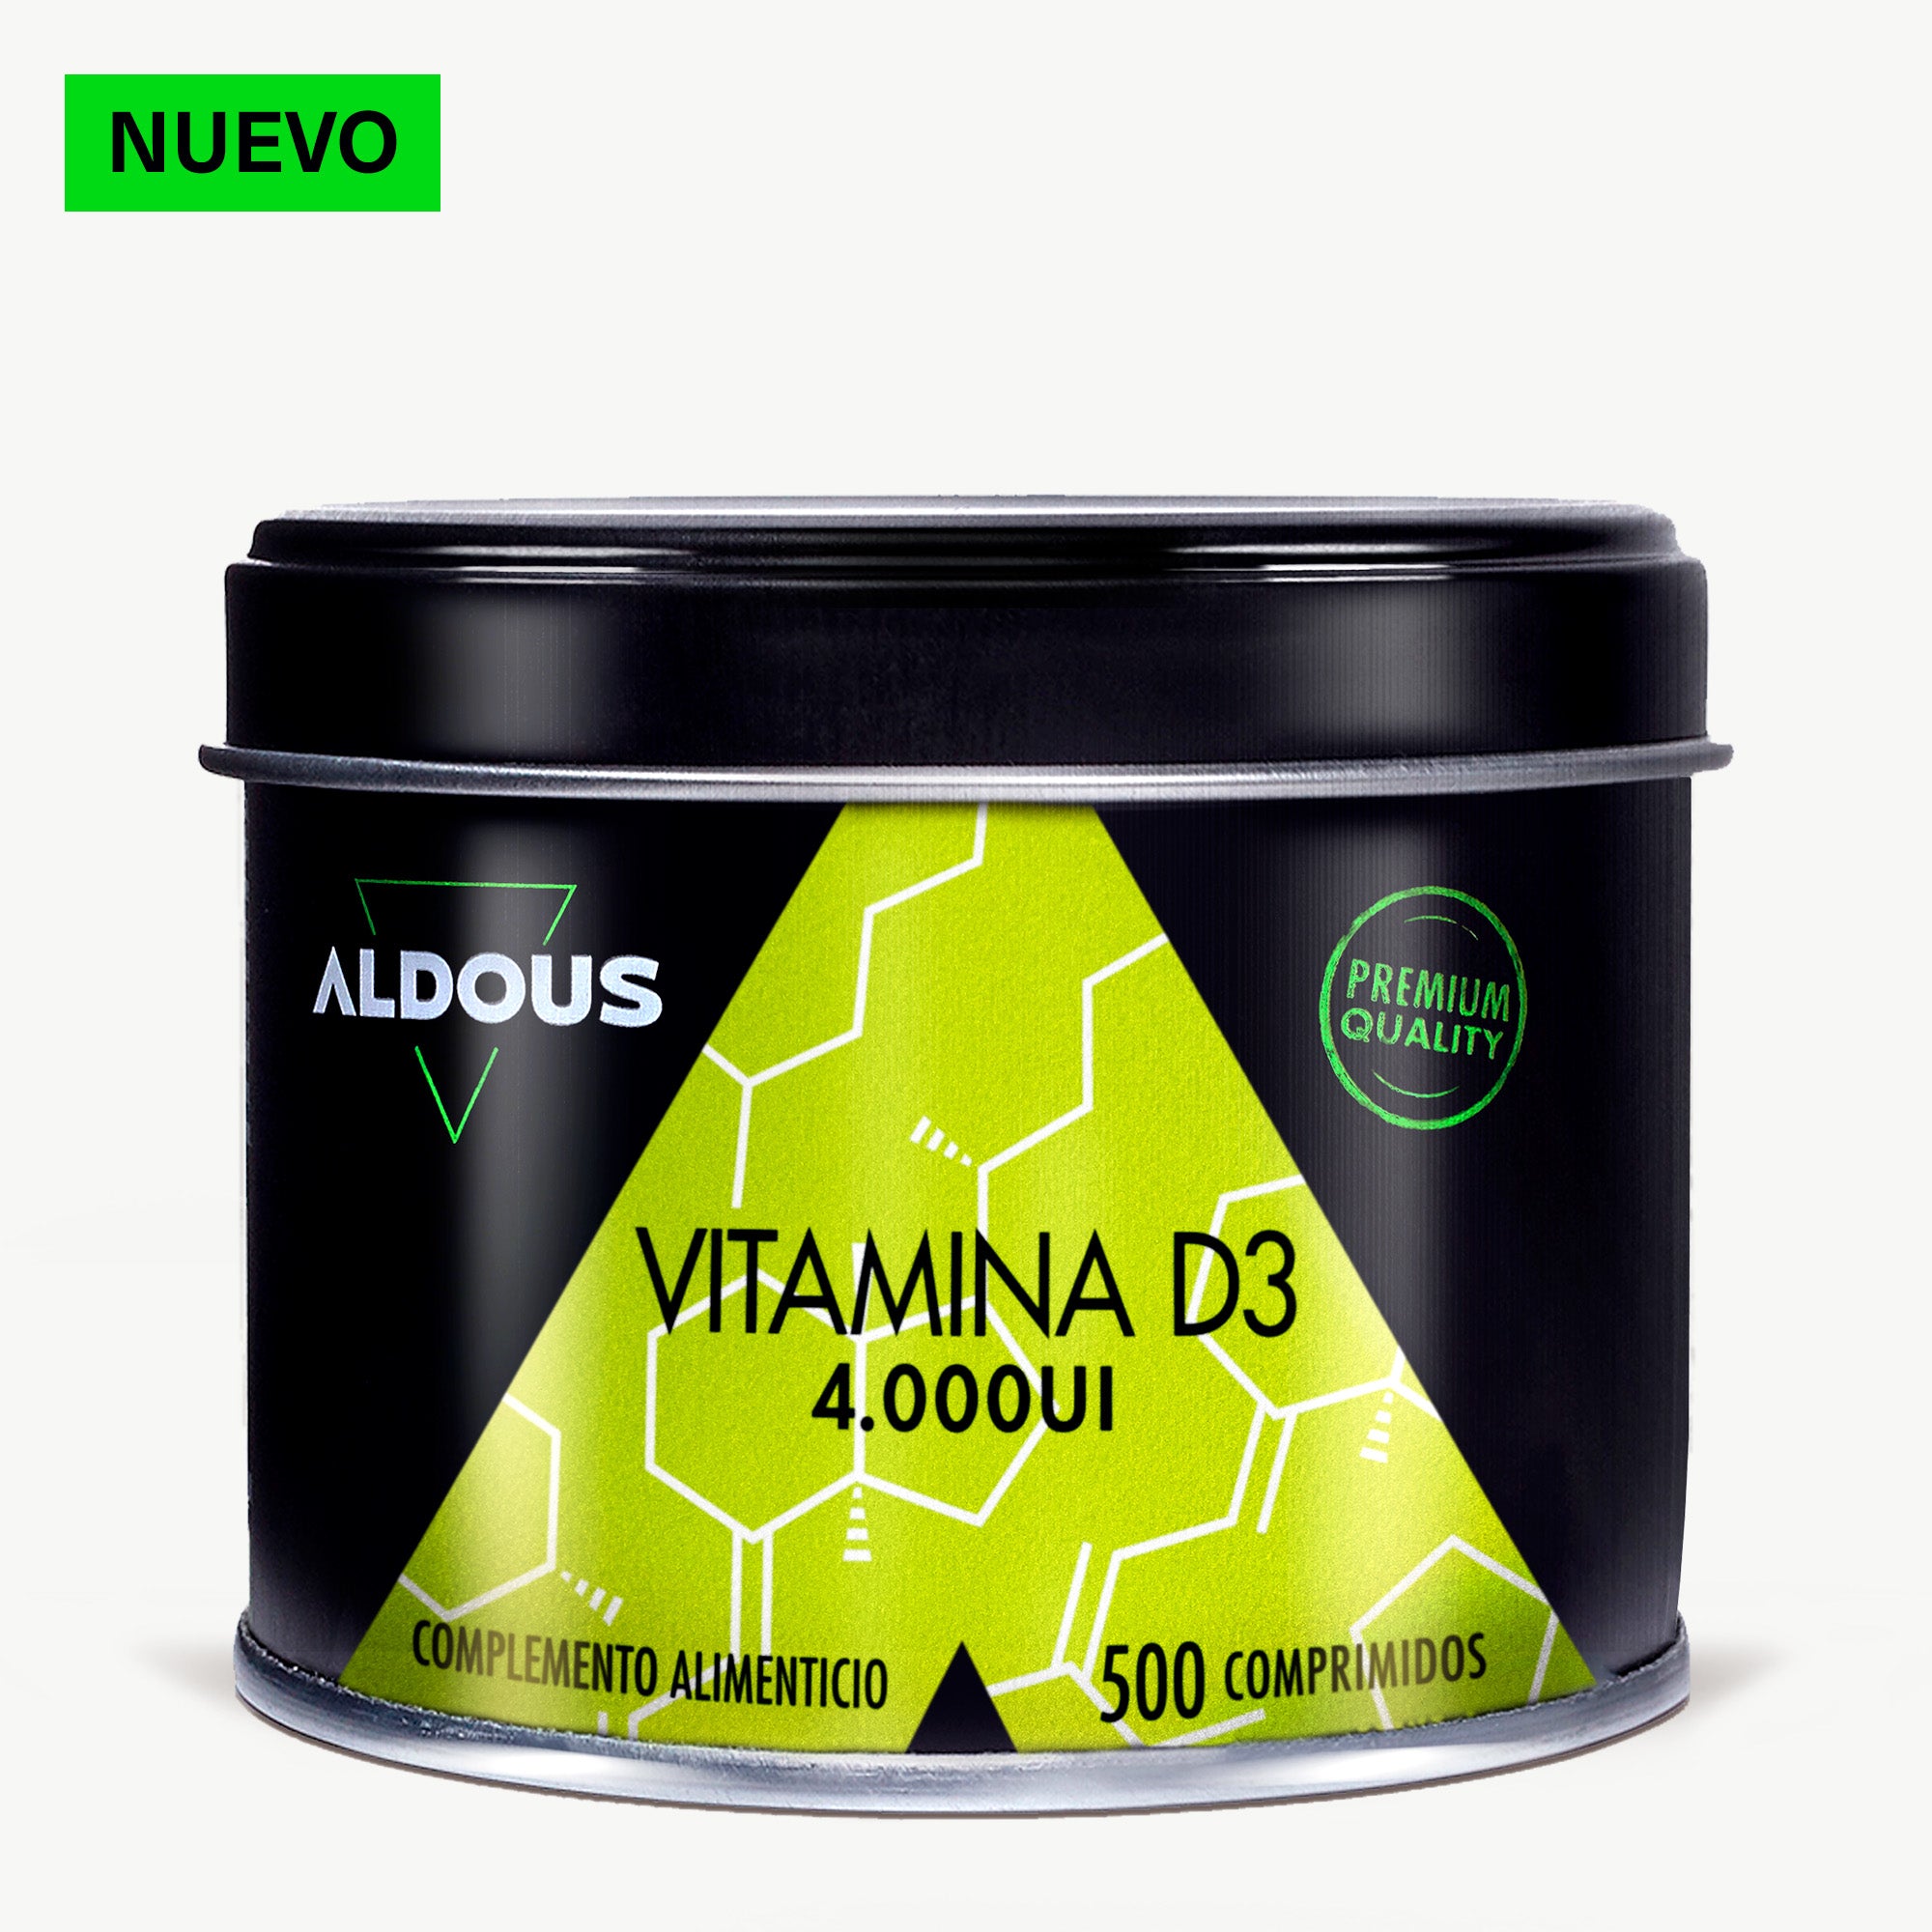 Aldous Bio prevé lanzar 20 nuevos productos en los próximos meses -  Nutrasalud